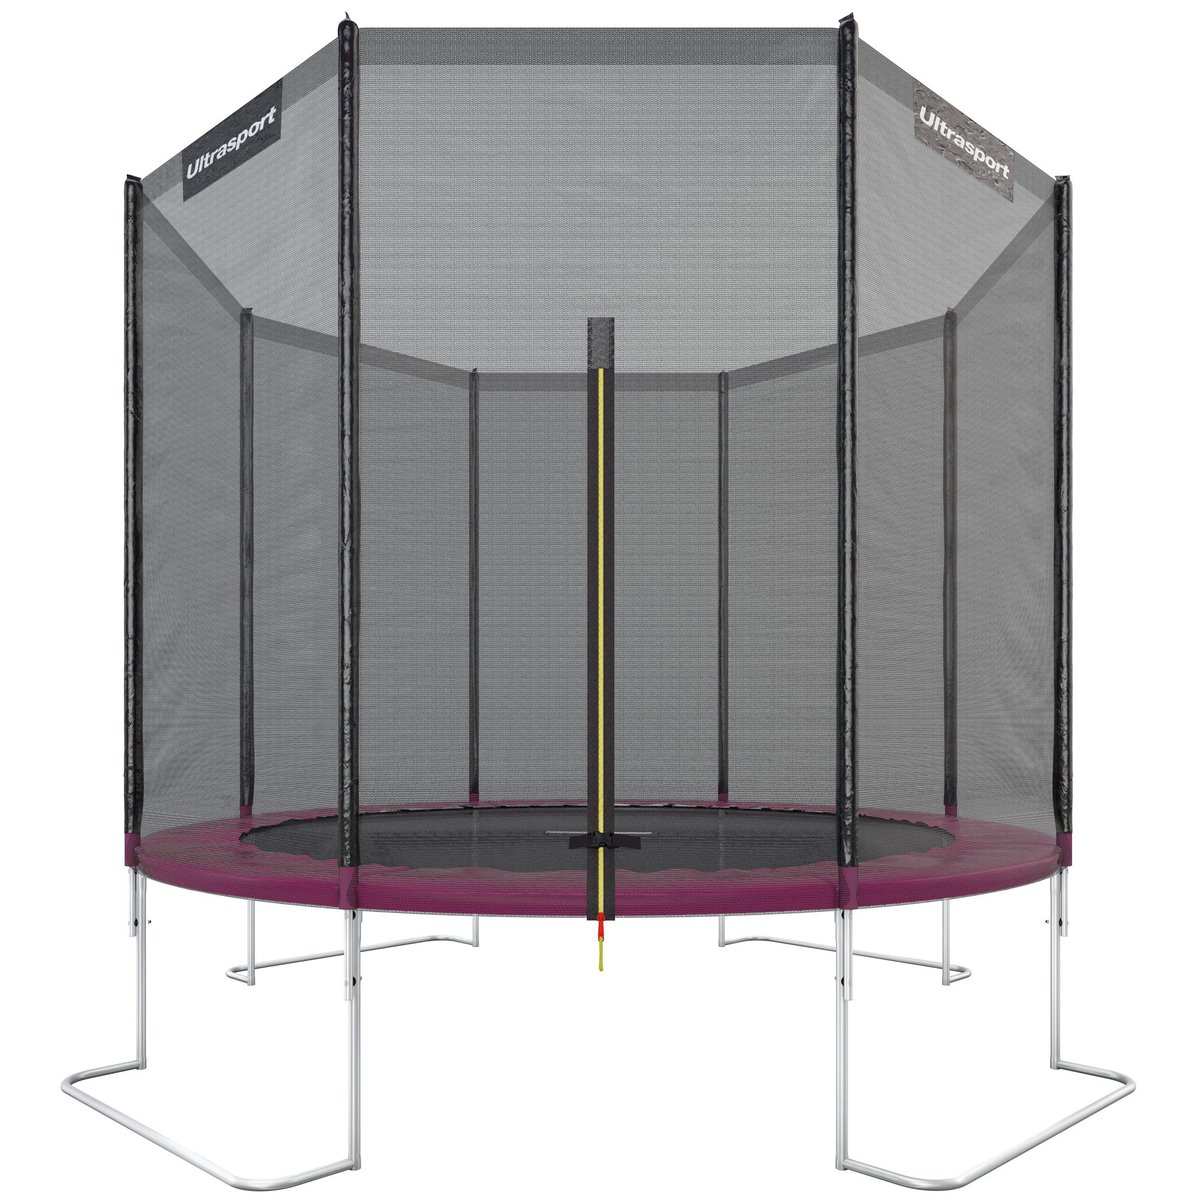 Ultrasport Jumper trampolina ogrodowa, zestaw kompletny zawierający matę do skakania, siatkę bezpieczeństwa, wyściełane słupki do siatki i osłonę krawędzi, różowy, 305 cm 331300000231_Pink_305 cm